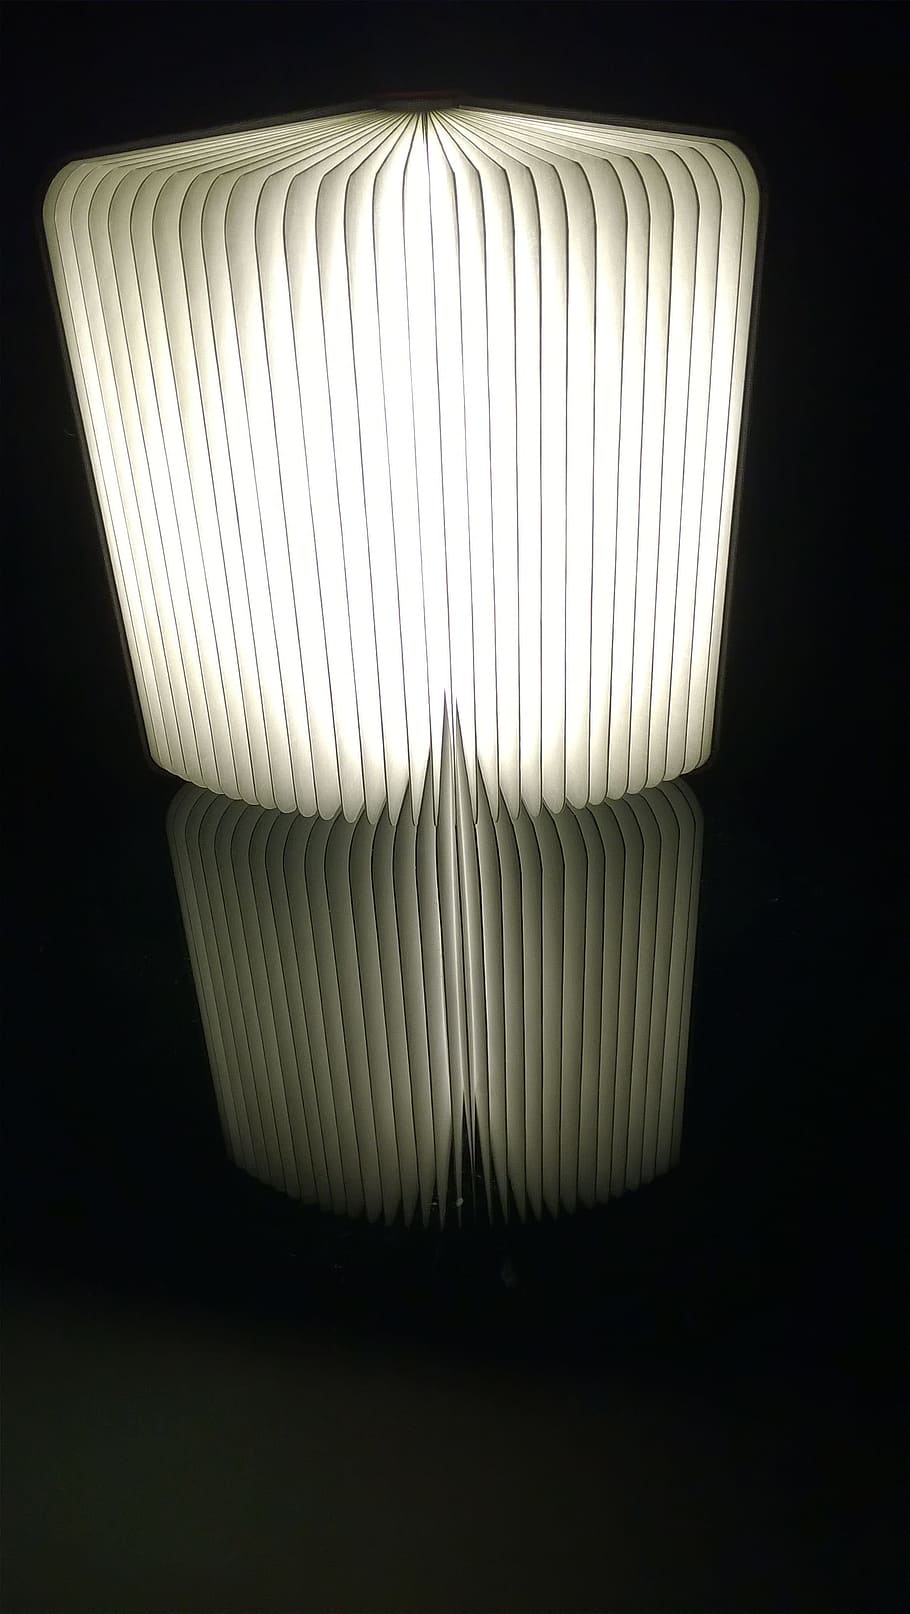 lámpara, luz, bombillas, fondo negro, en el interior, foto de estudio, color blanco, sin personas, un solo objeto, patrón